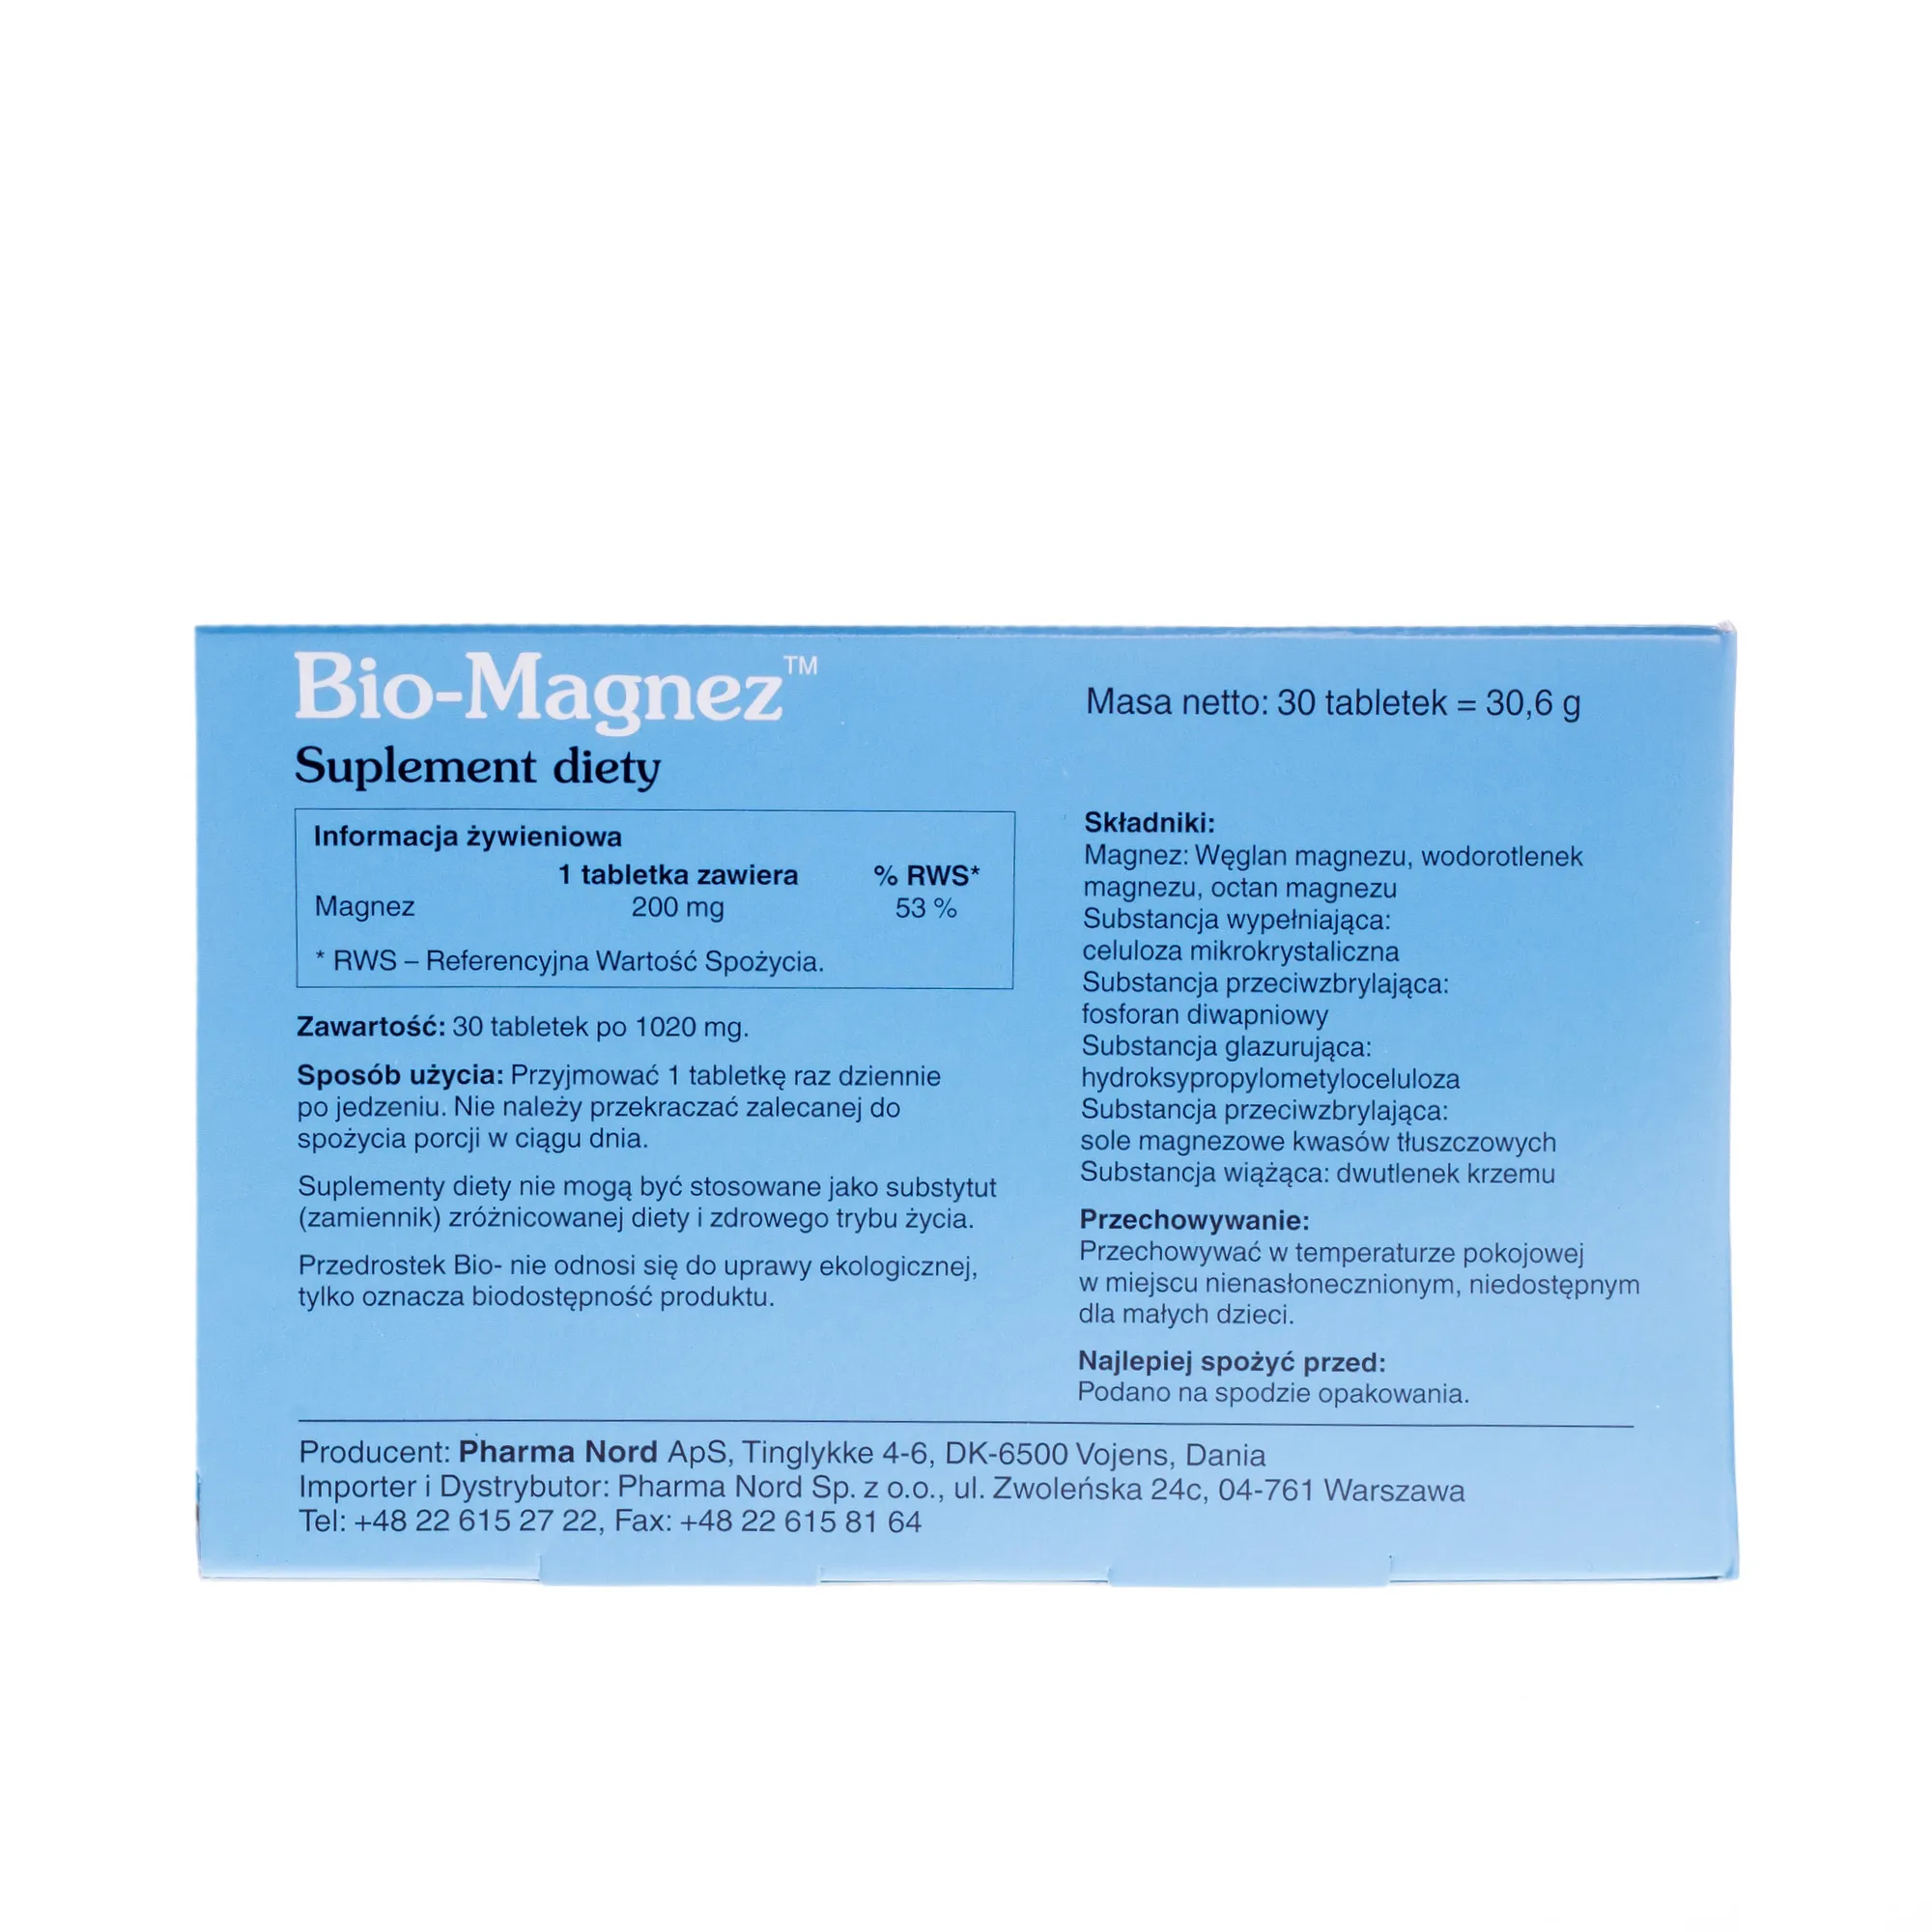 Bio-Magnez, suplement diety, 30 tabletek 